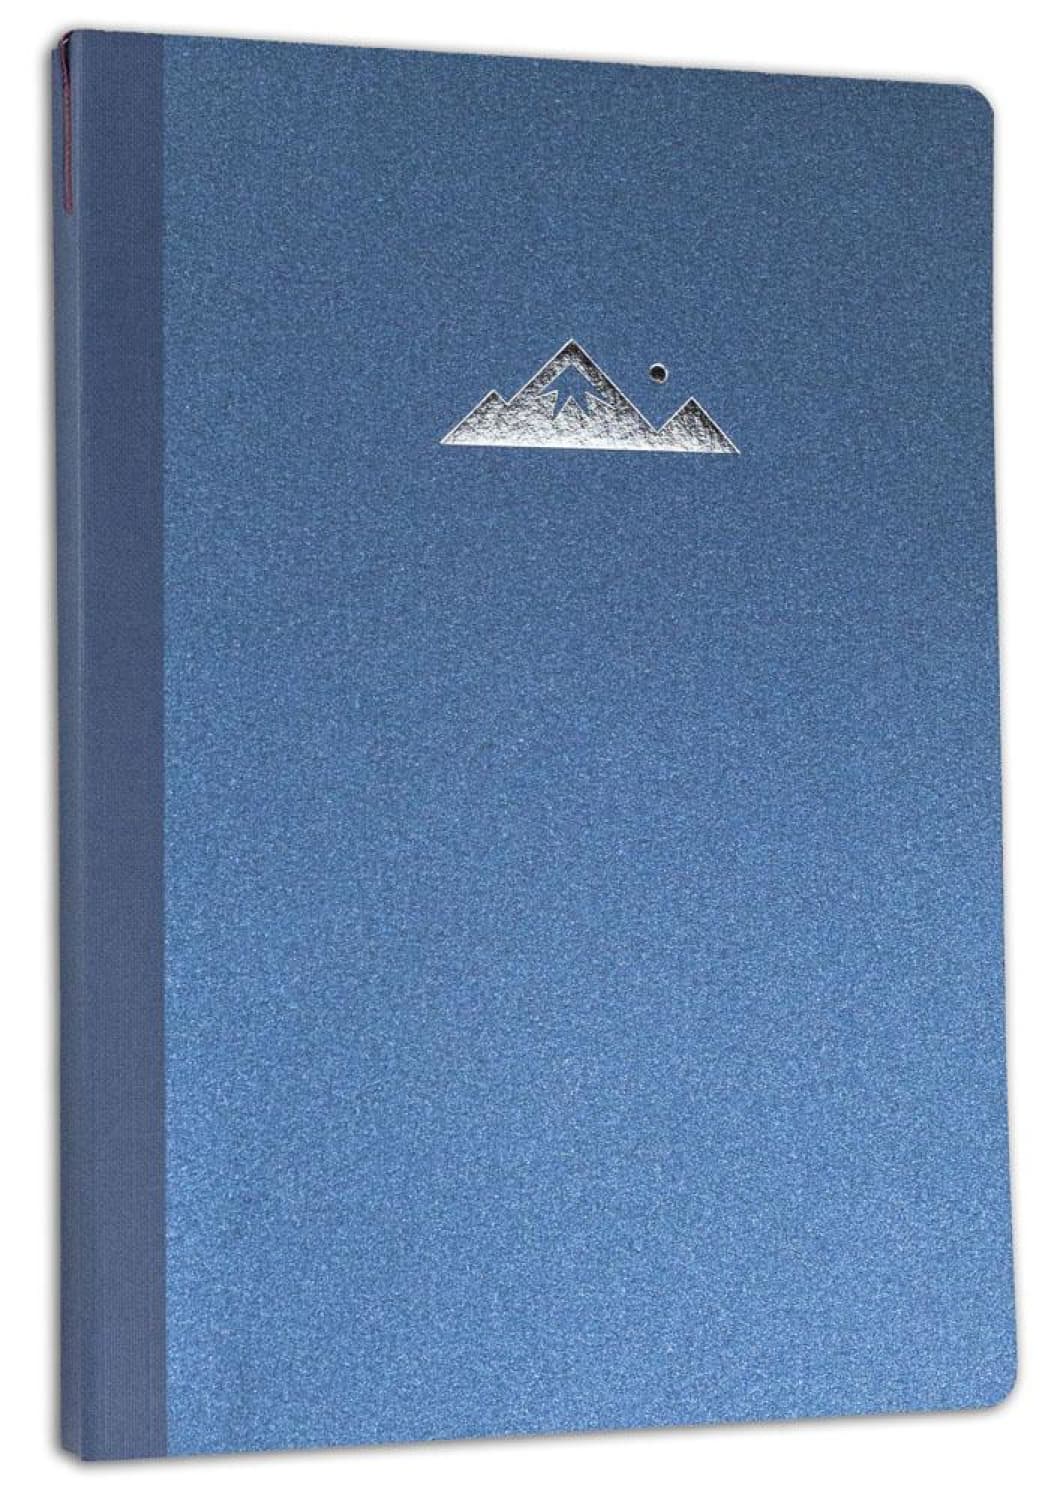 Profolio Oasis Summit Notebook - B6, Metallic Blue